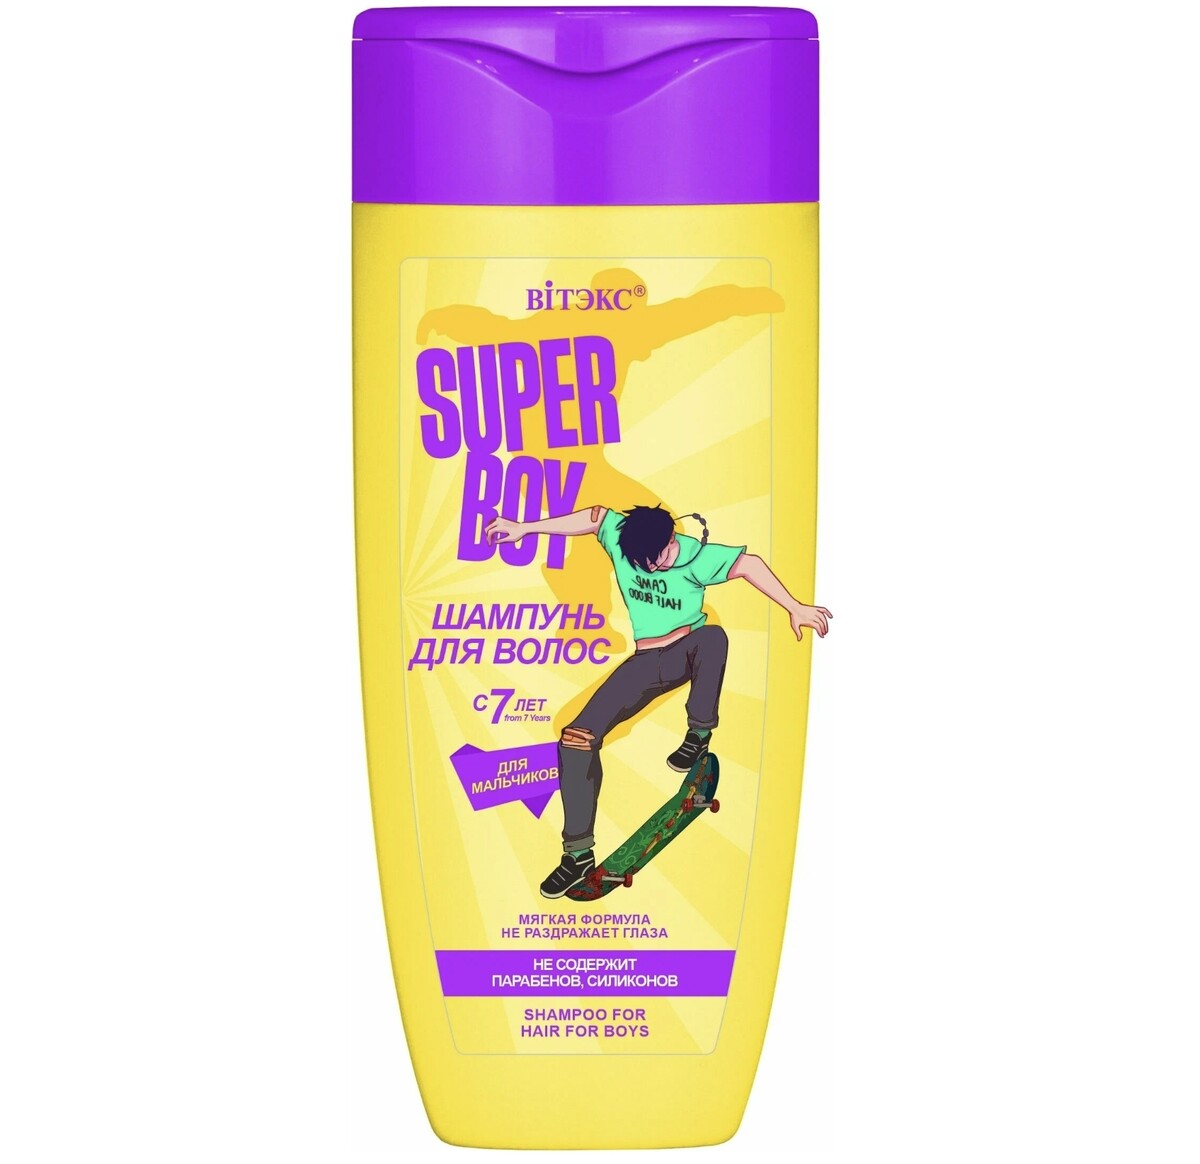 Super boy шампунь для волос для мальчиков с 7 лет, new 275мл средство для осветления волос super 70 г